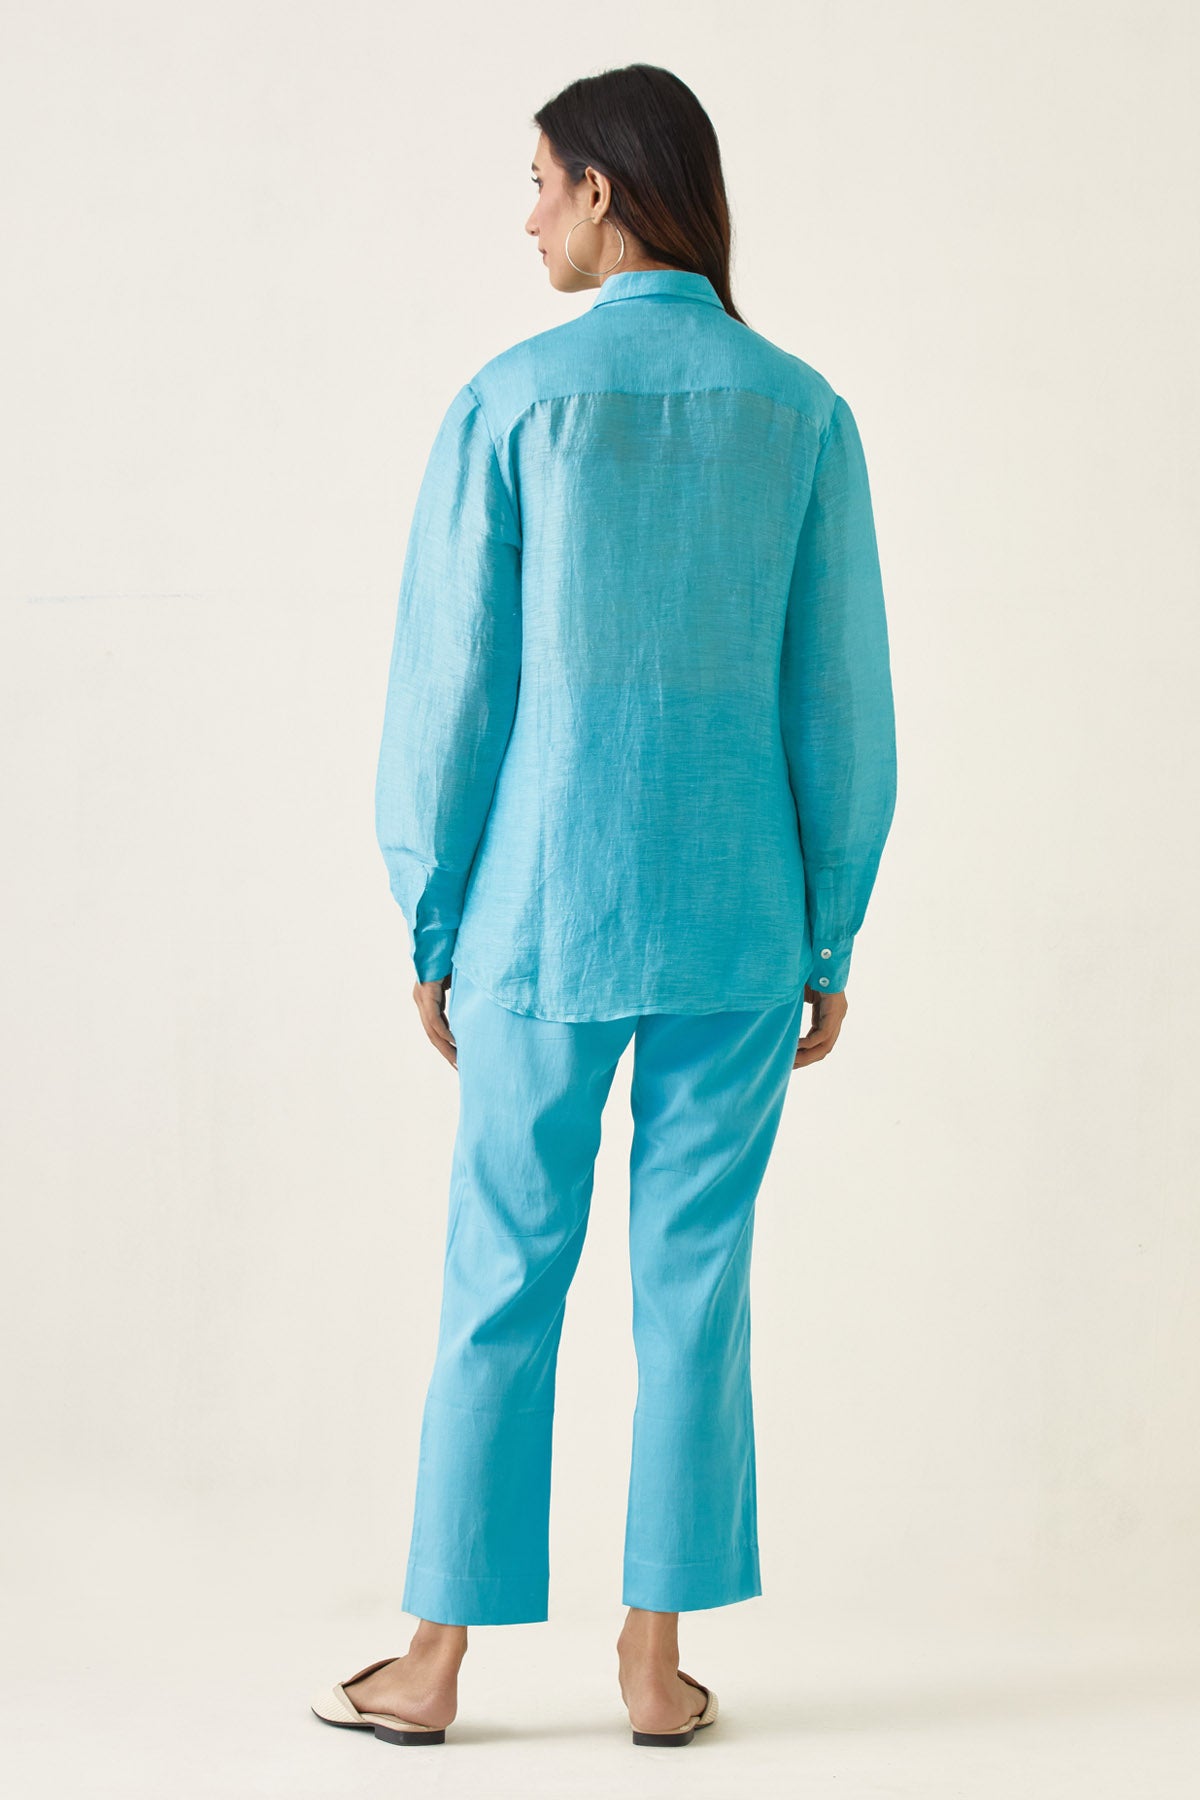 Pastel Blue Collared Shirt & Pant Set